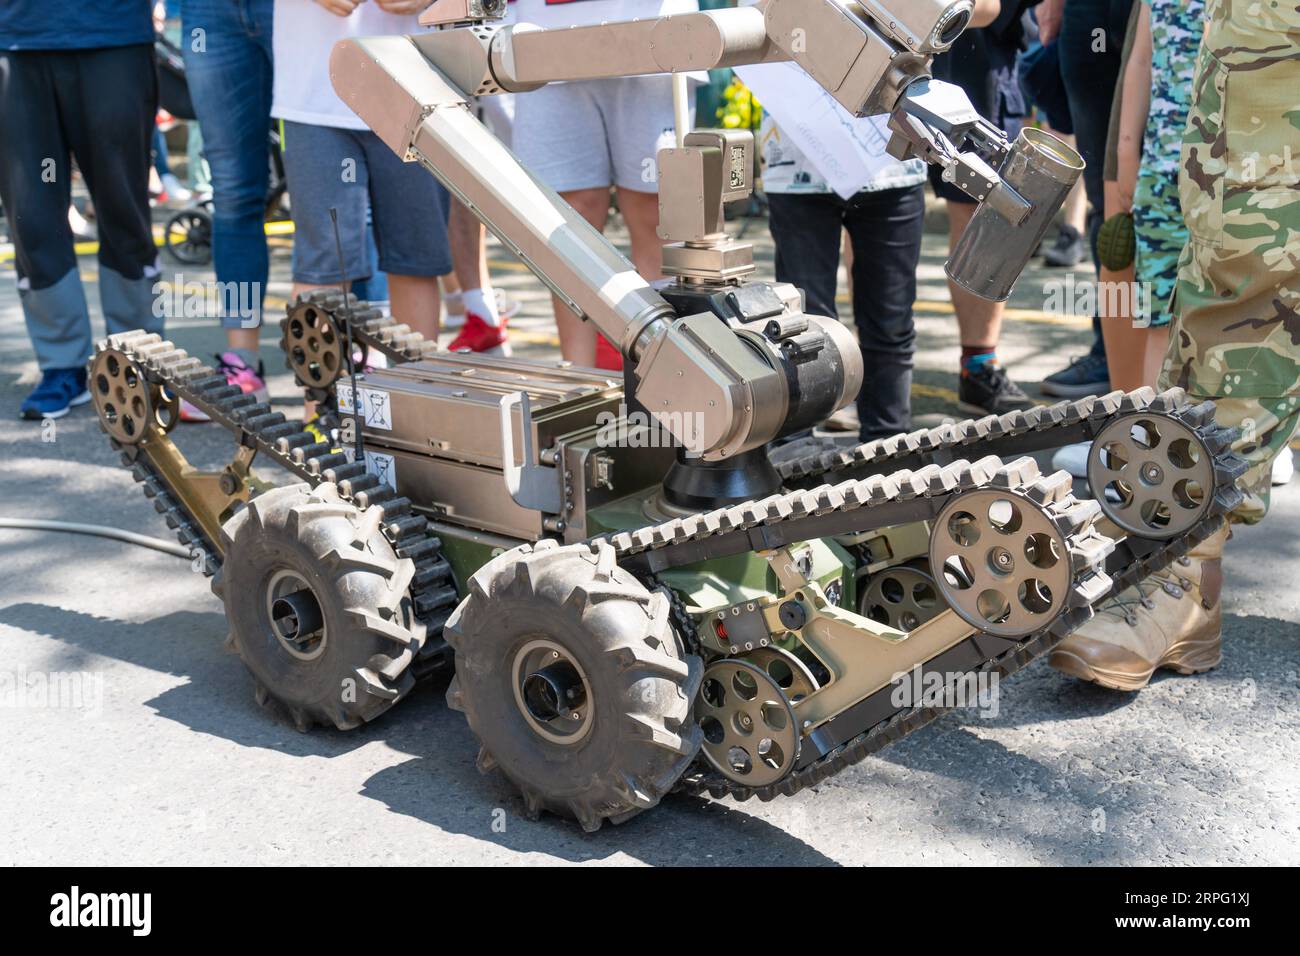 Rilevamento di bombe incendiarie e disinnesco di robot militari durante una dimostrazione (smaltimento di ordigni esplosivi) Foto Stock